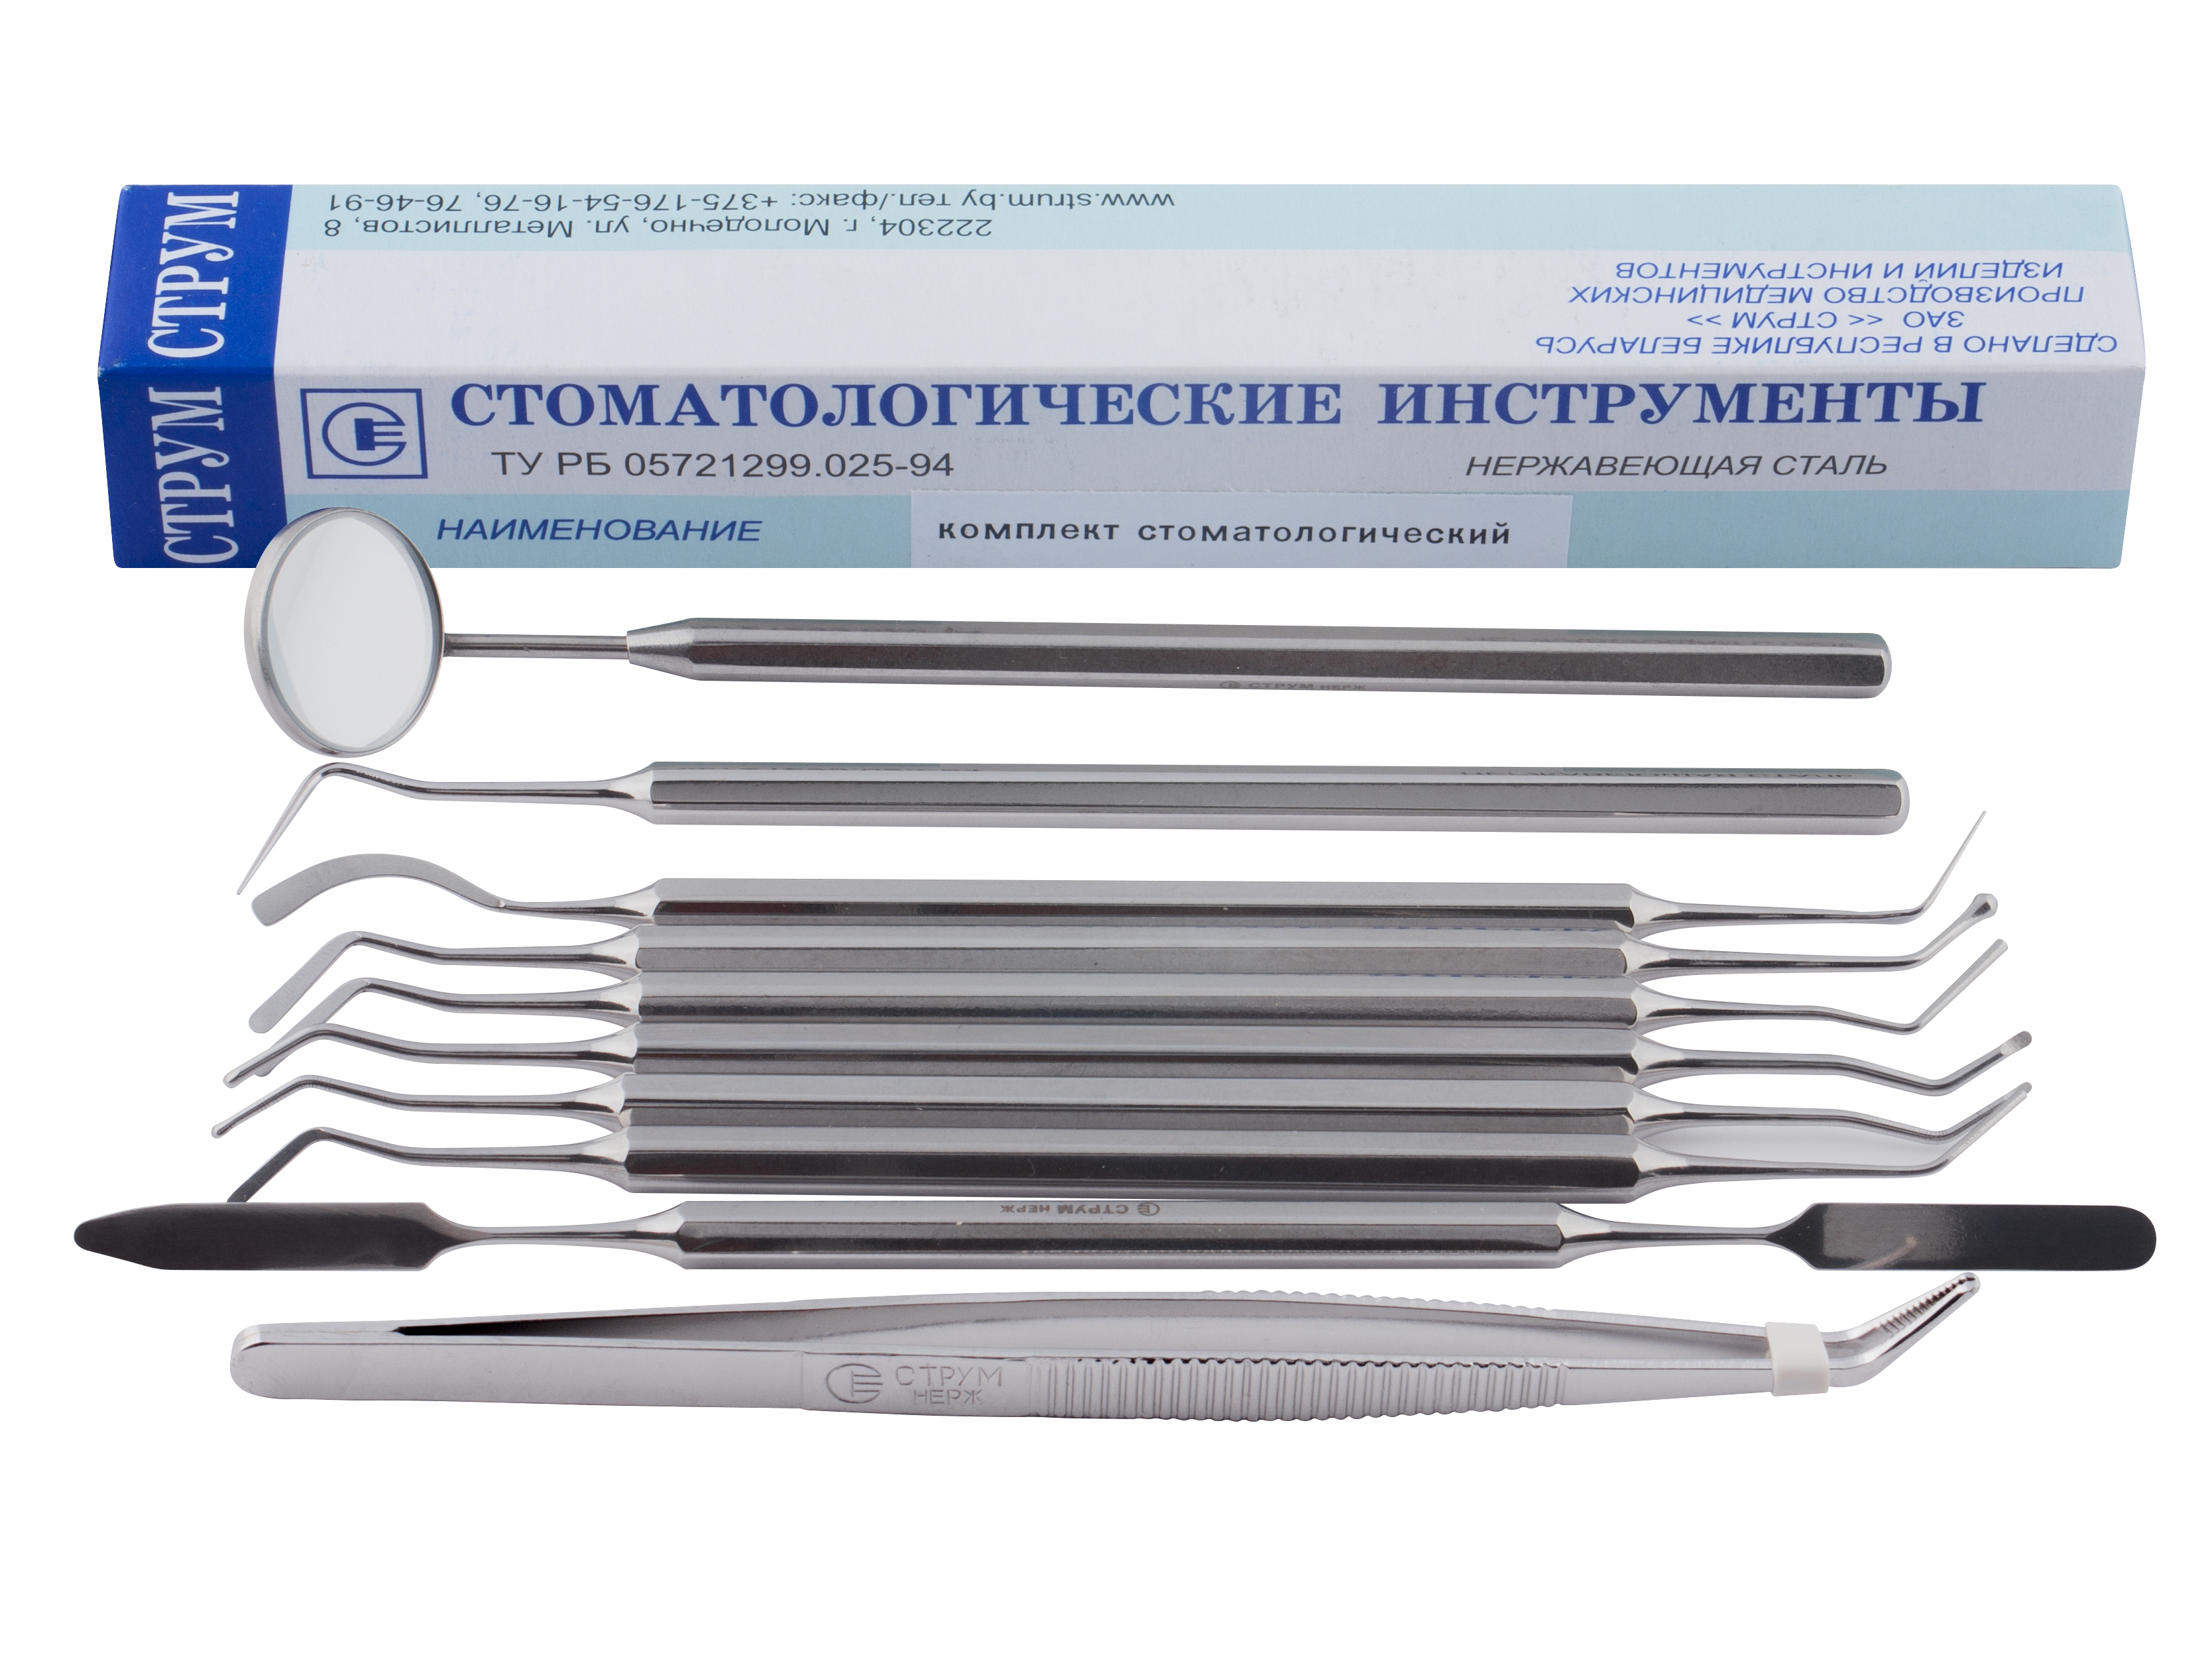 Комплект стоматологических инструментов (10 шт.)  (Белоруссия)